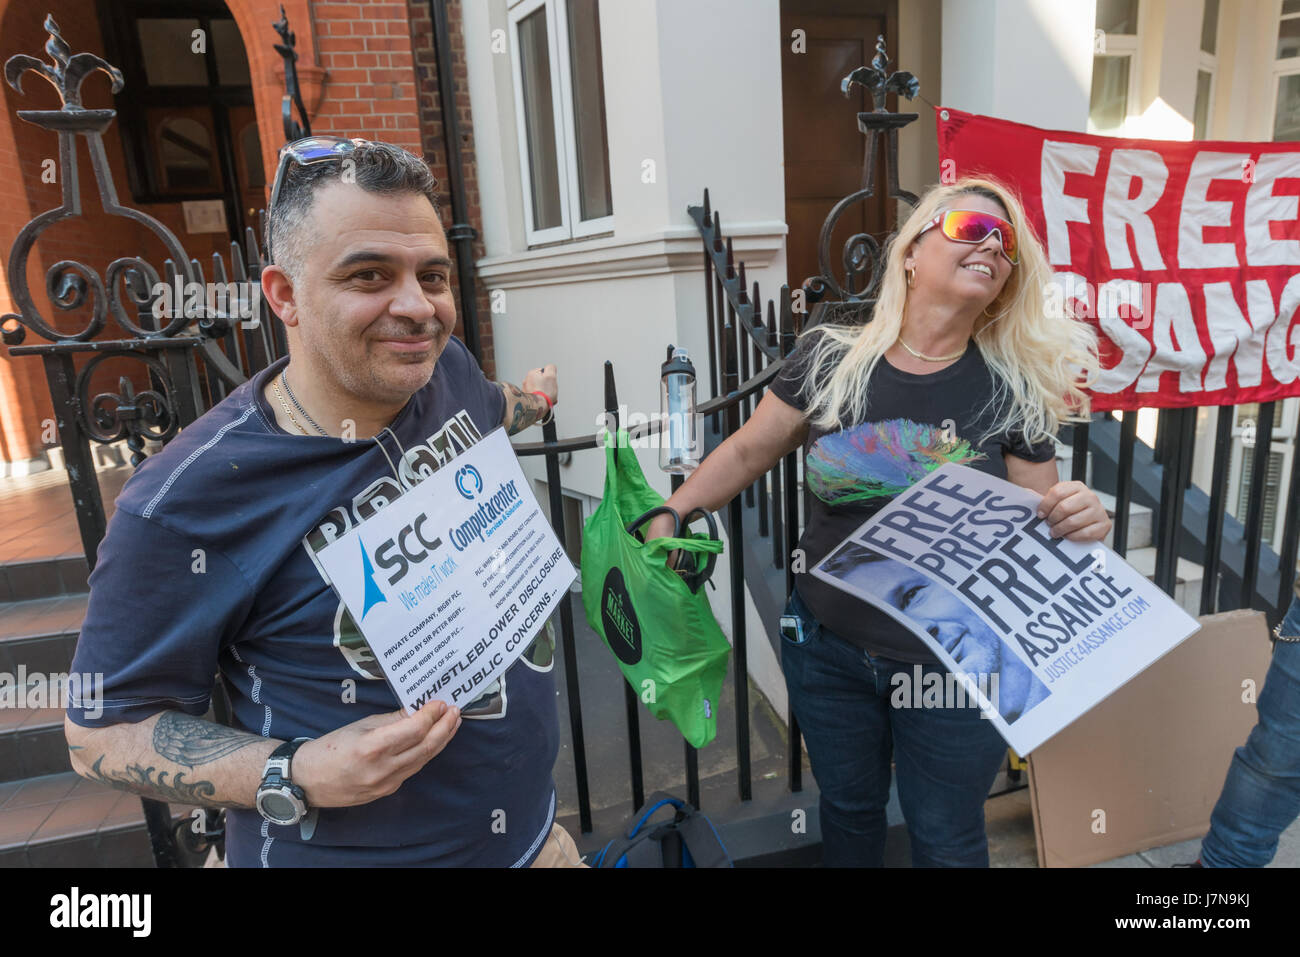 Londres, Royaume-Uni. 25 mai 2017. Les partisans de Julian Assange qui avait été soustrait à la police britannique dans l'ambassade équatorienne pendant presque cinq ans protester dans la rue face à l'ambassade. Ils appellent pour le Royaume-Uni pour mettre fin à la chasse aux sorcières et grant Assange passage sûr de quitter le Royaume-Uni sans arrestation. Peter Marshall/Alamy Live News Banque D'Images